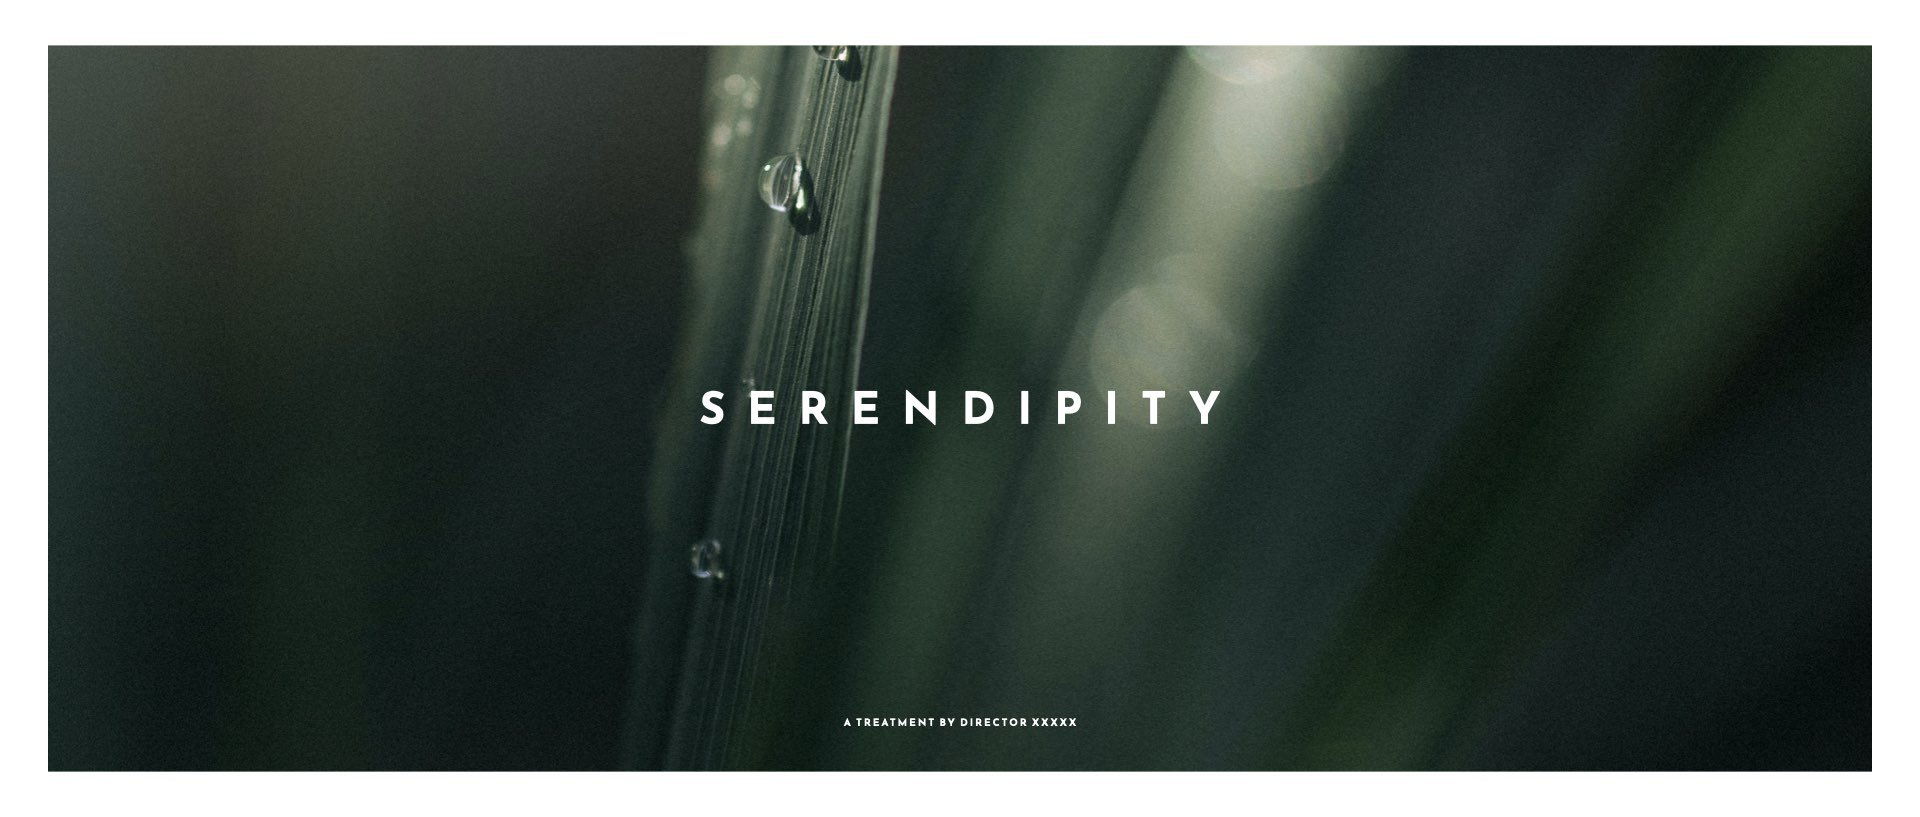 ‎Director's Treatment Template - Serendipity.‎001.jpeg